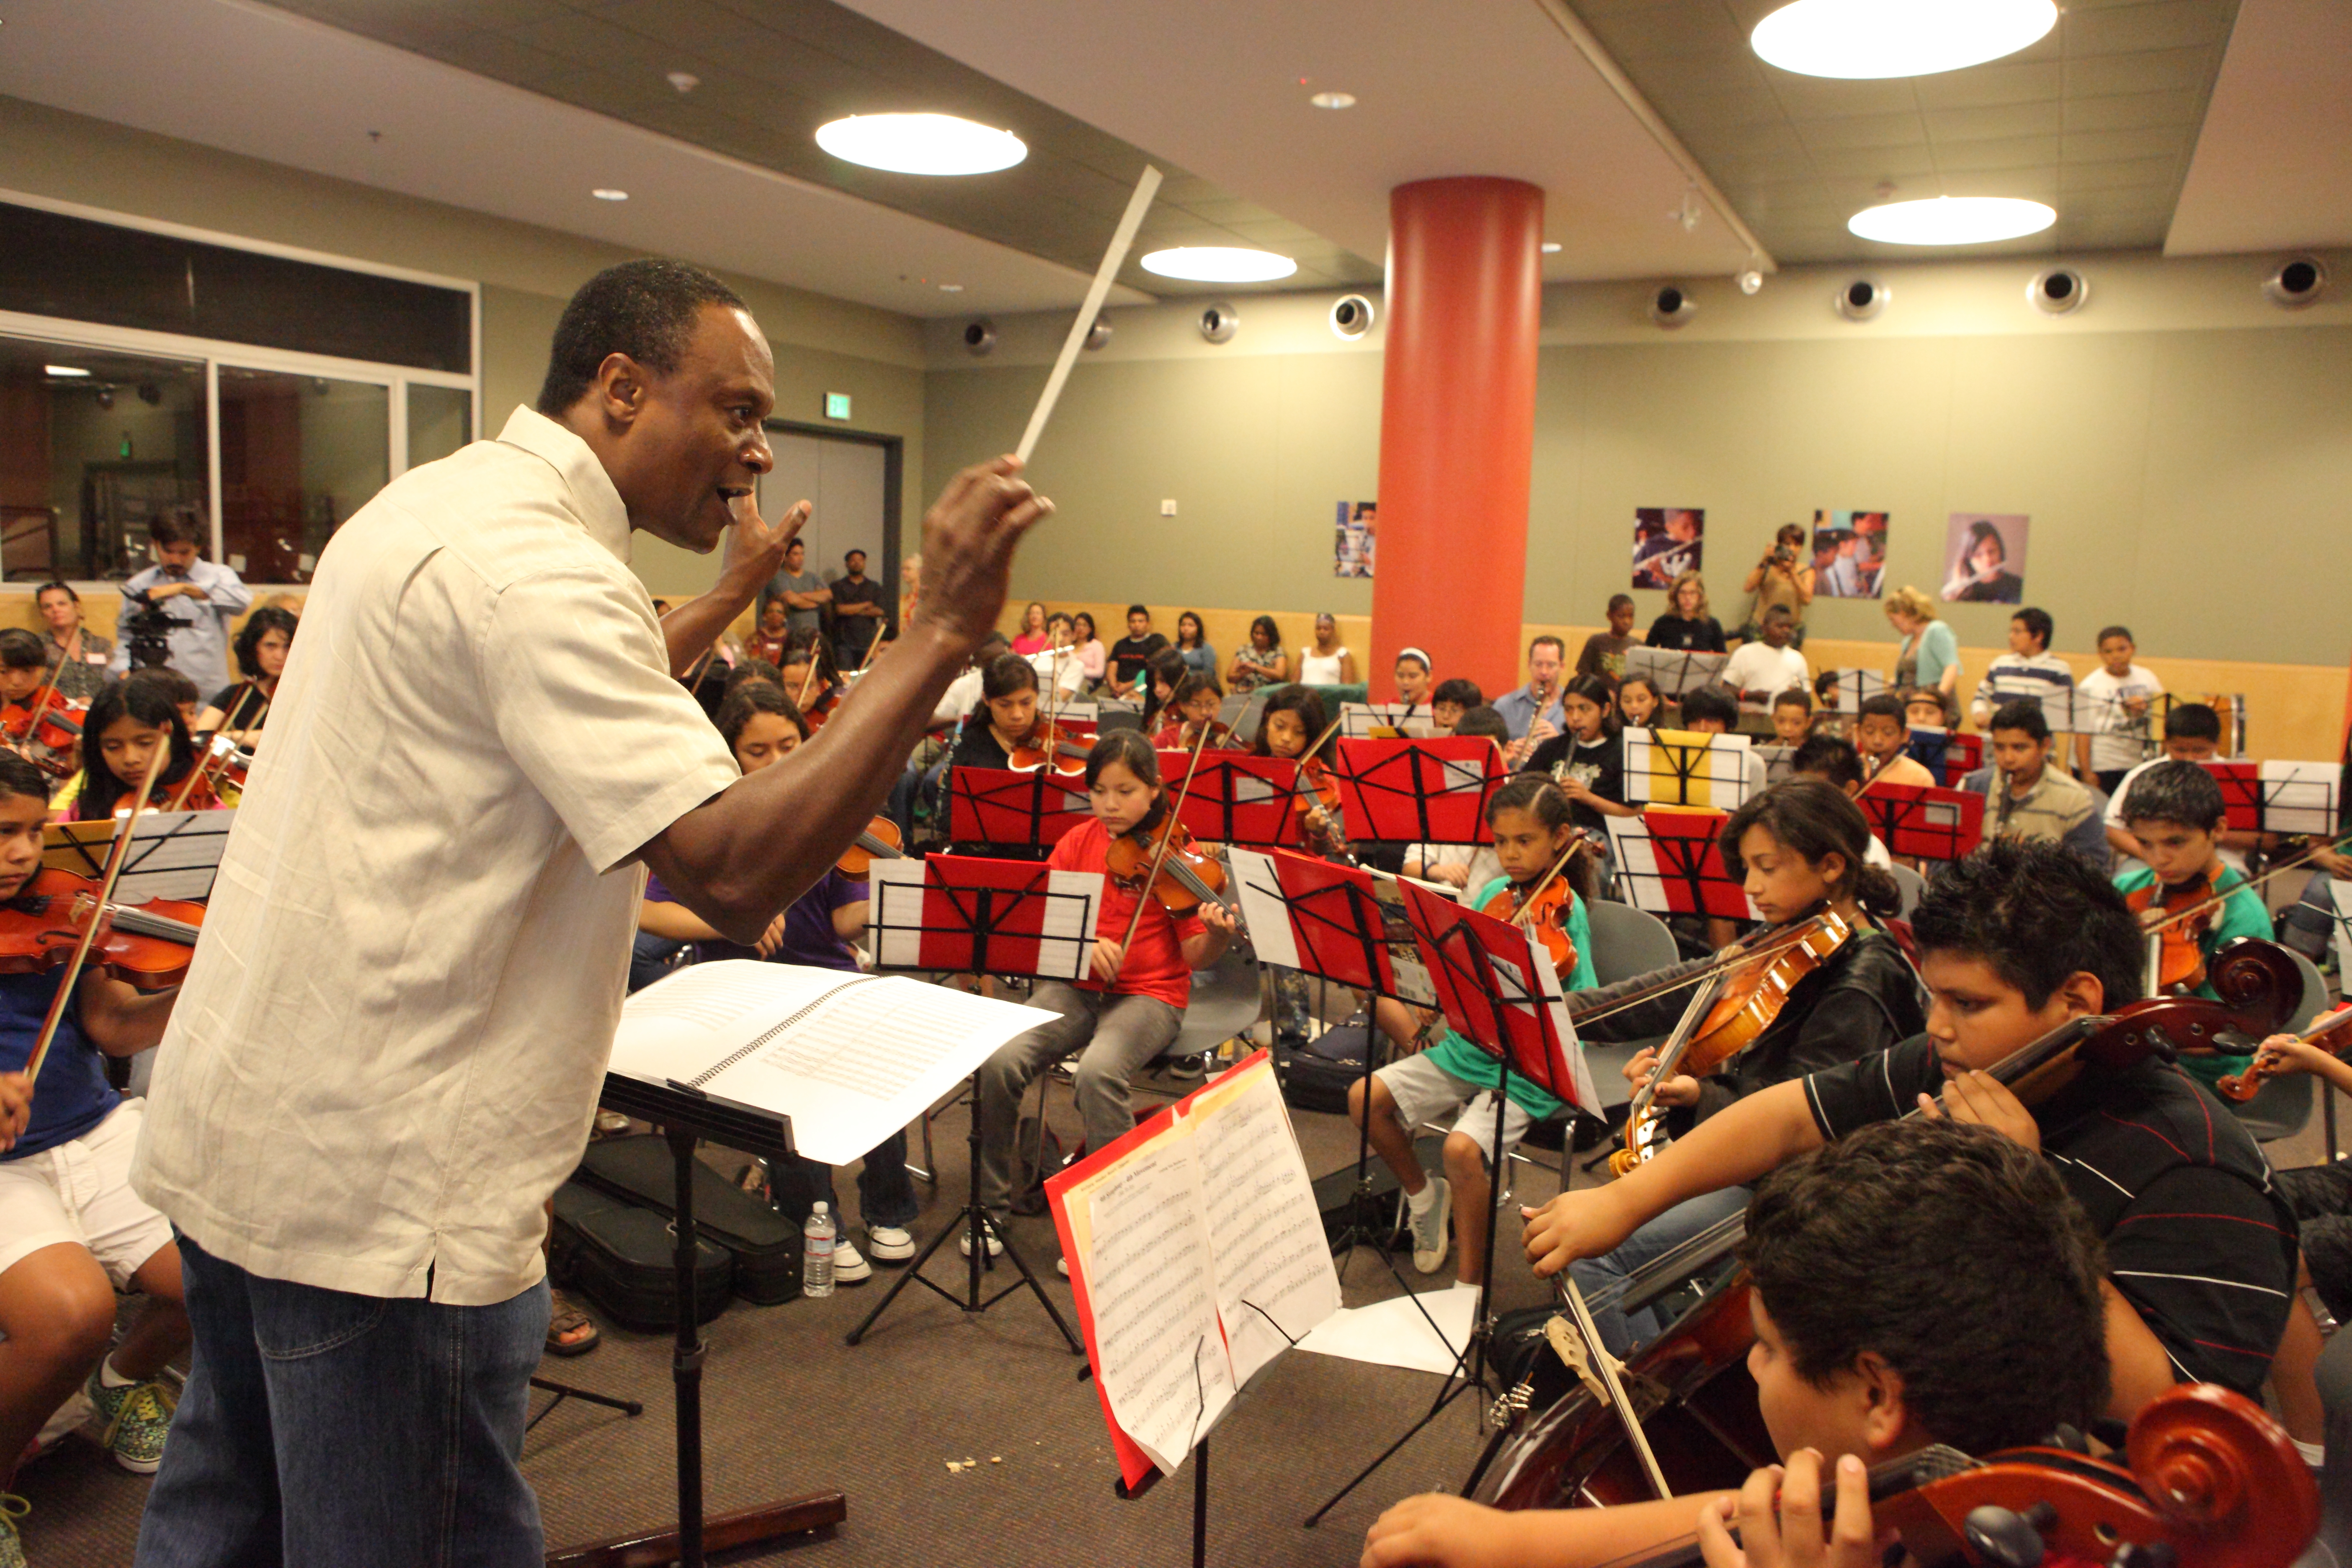 Thomas conducting students at YOLA at Expo Center